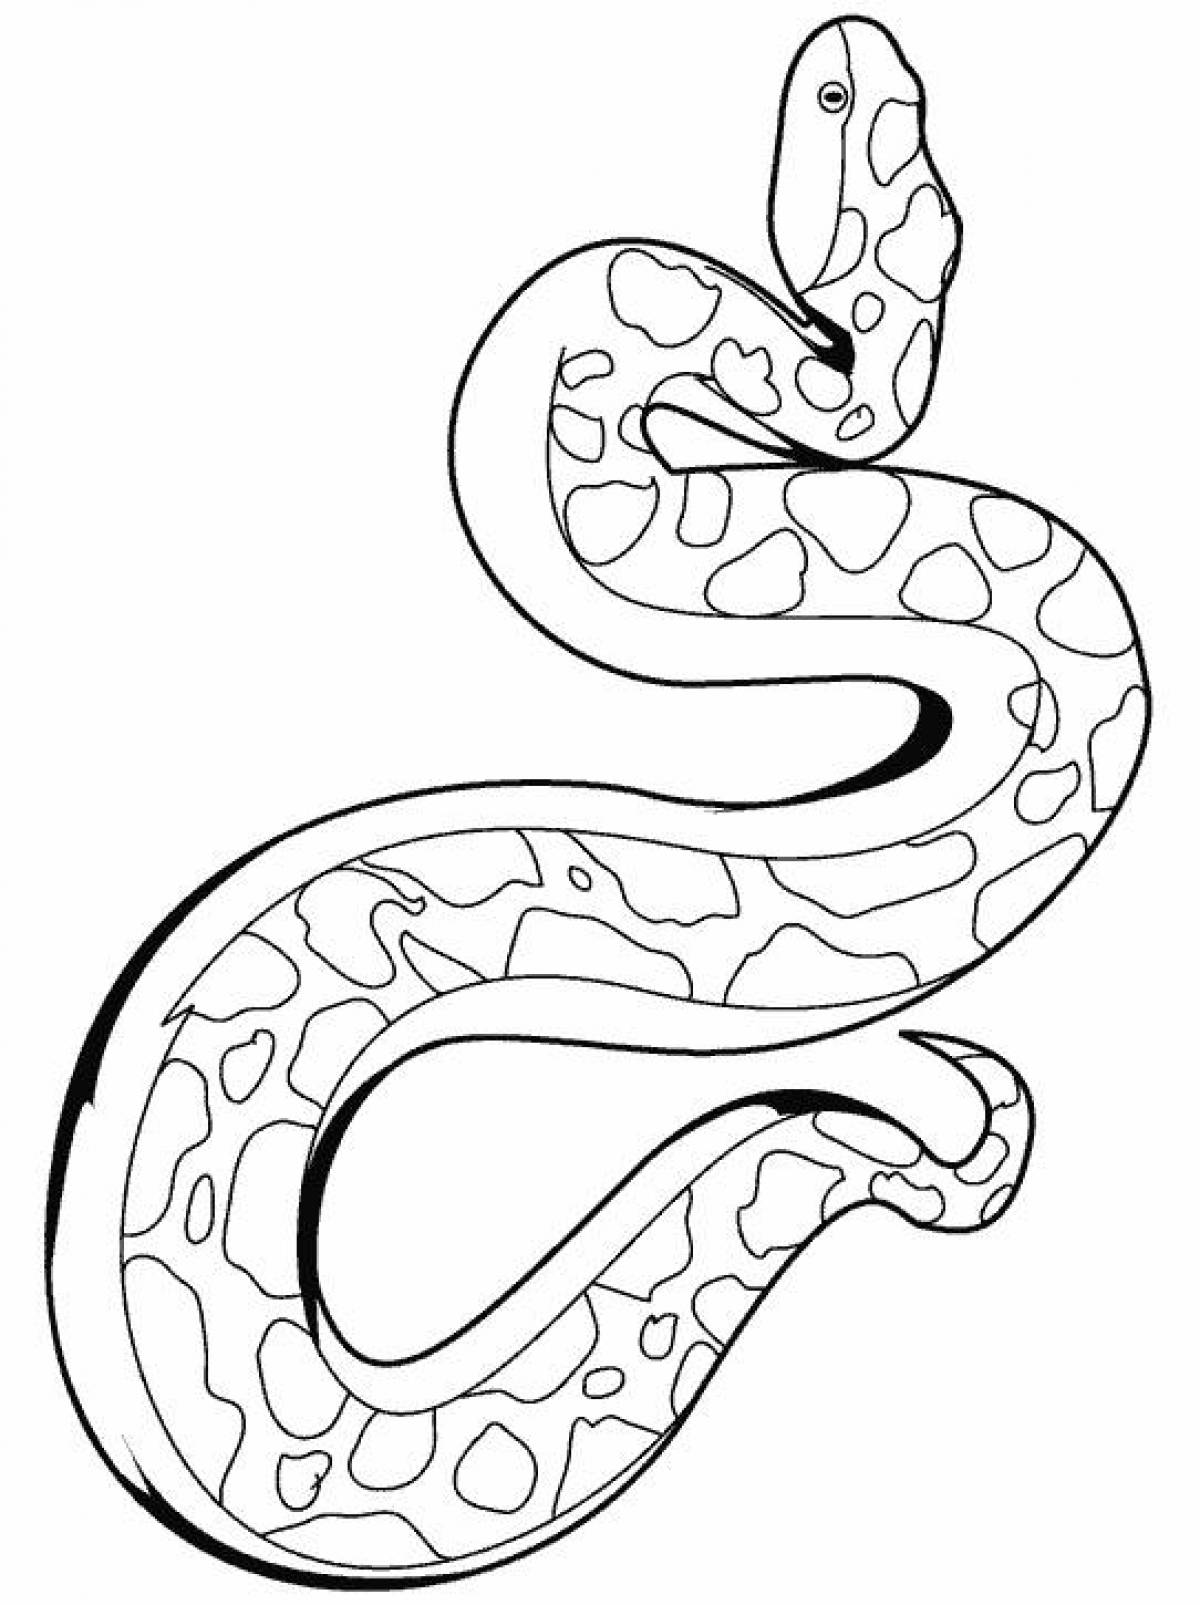 Удав рисунок. Королевский питон раскраска. Змея раскраска. Змея раскраска для детей. Раскраска змеи для детей.